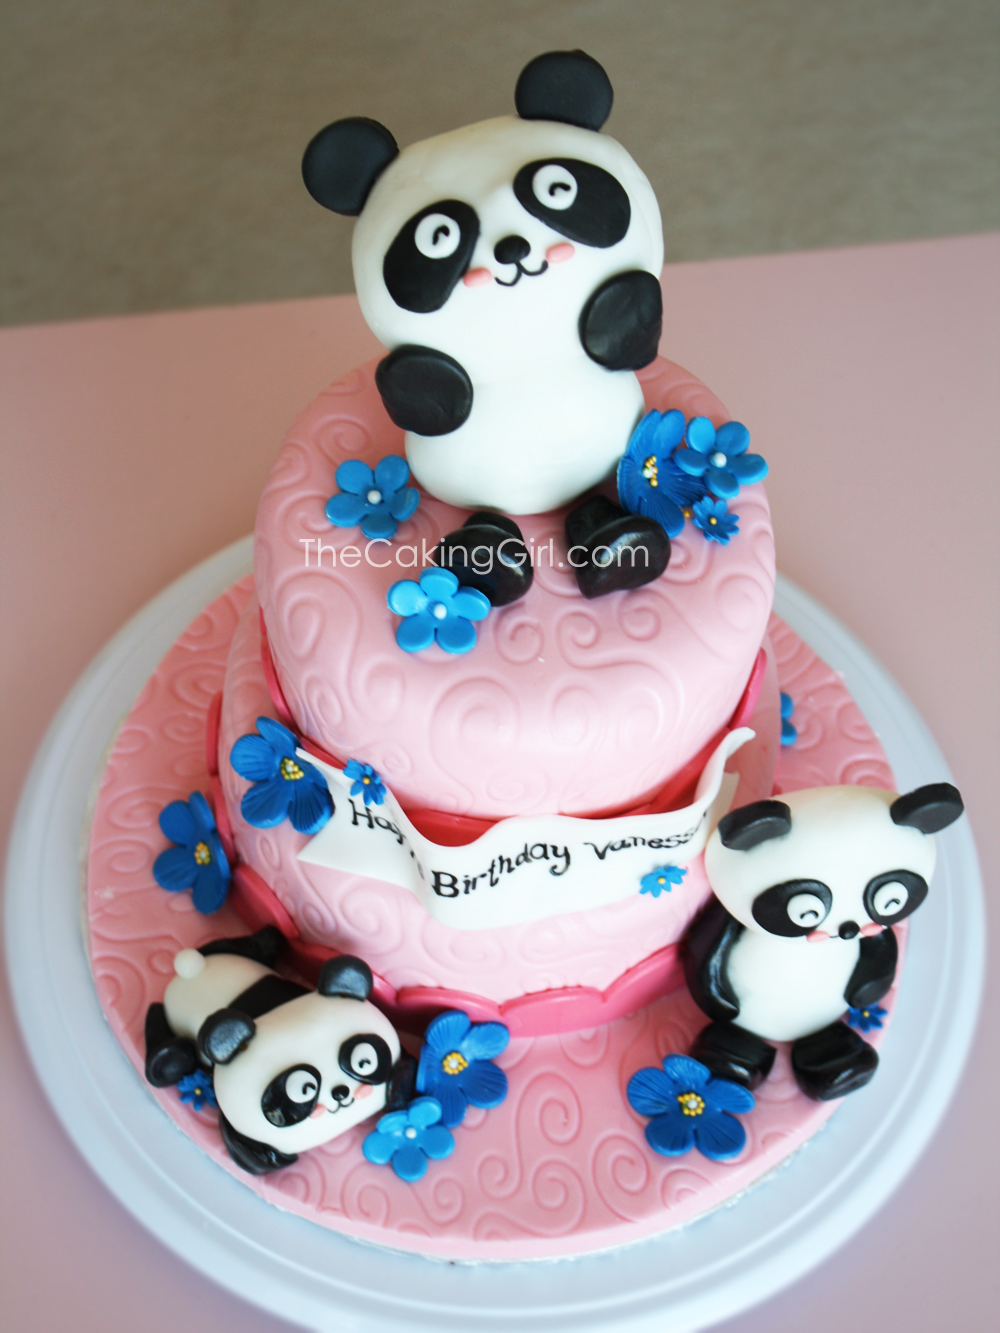 Торт с фигурками «панд»